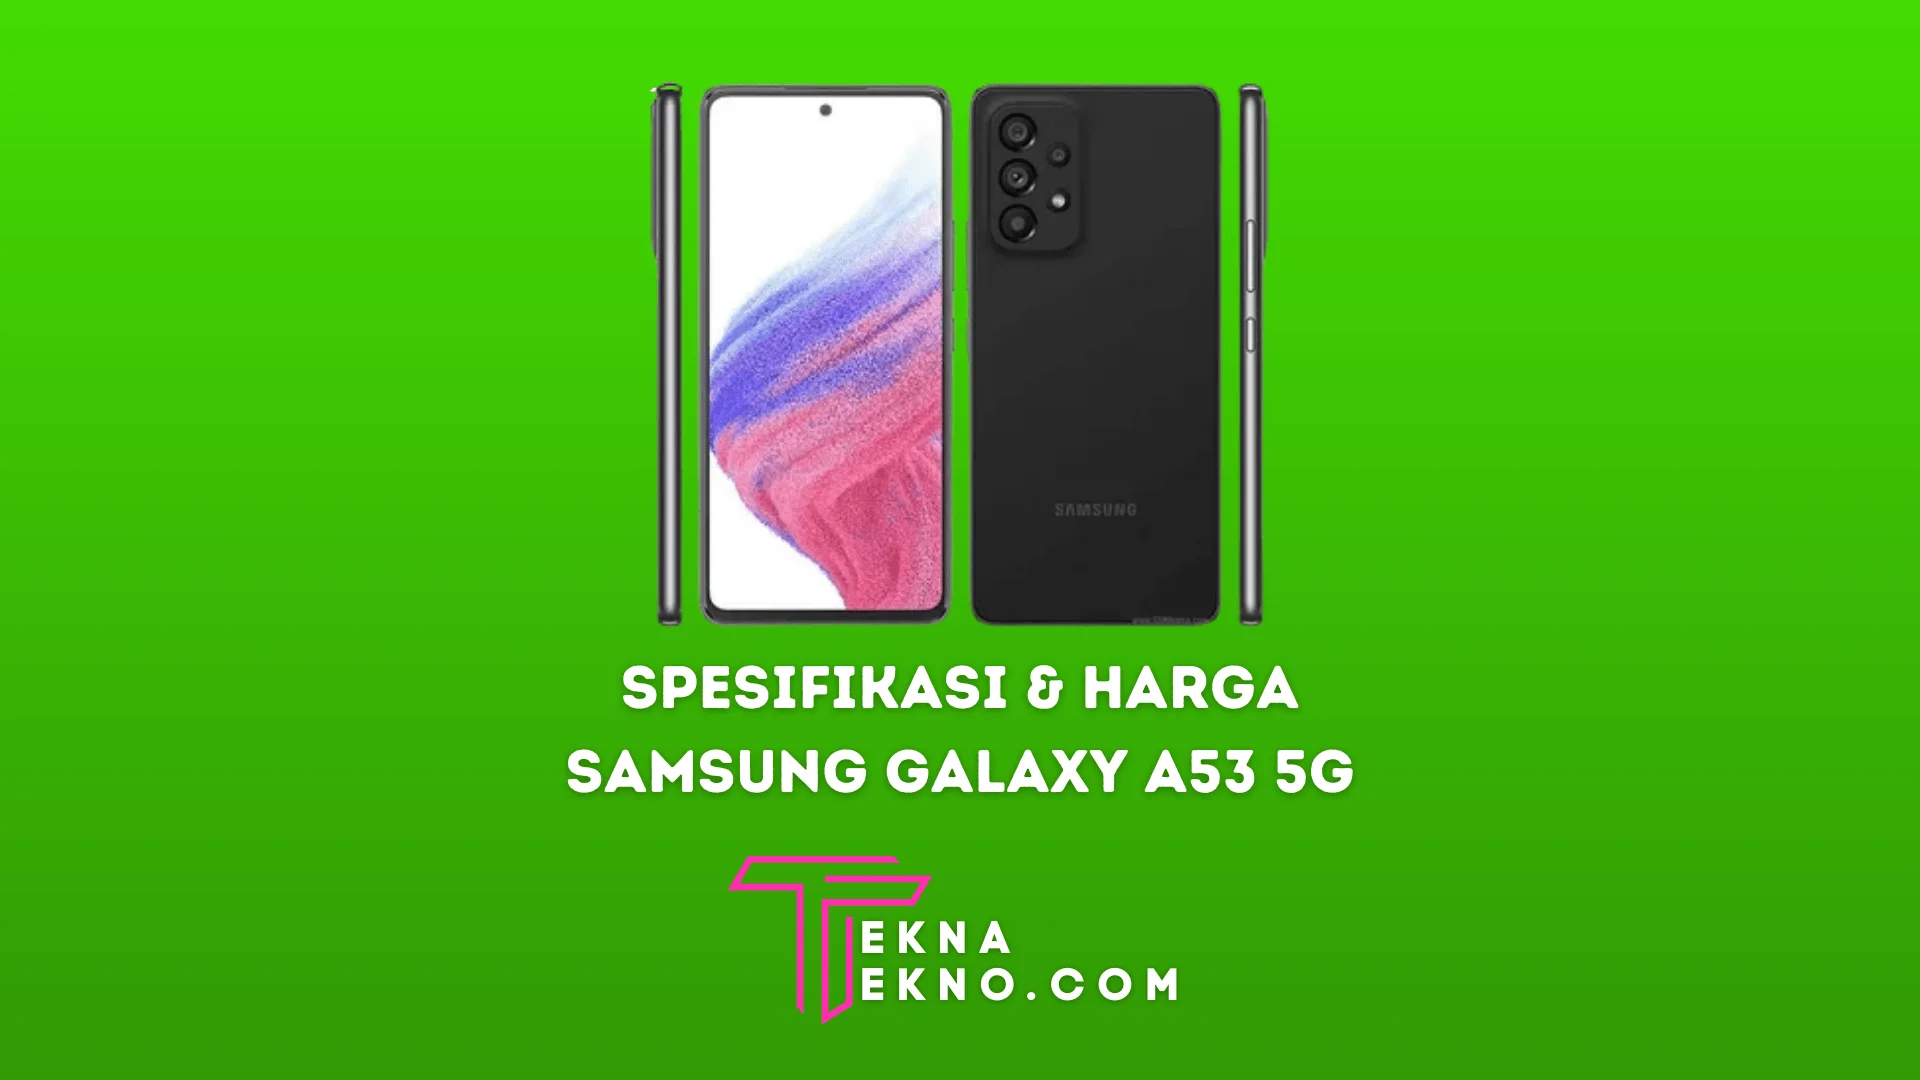 Spesifikasi Samsung Galaxy A53 5G dan Harganya